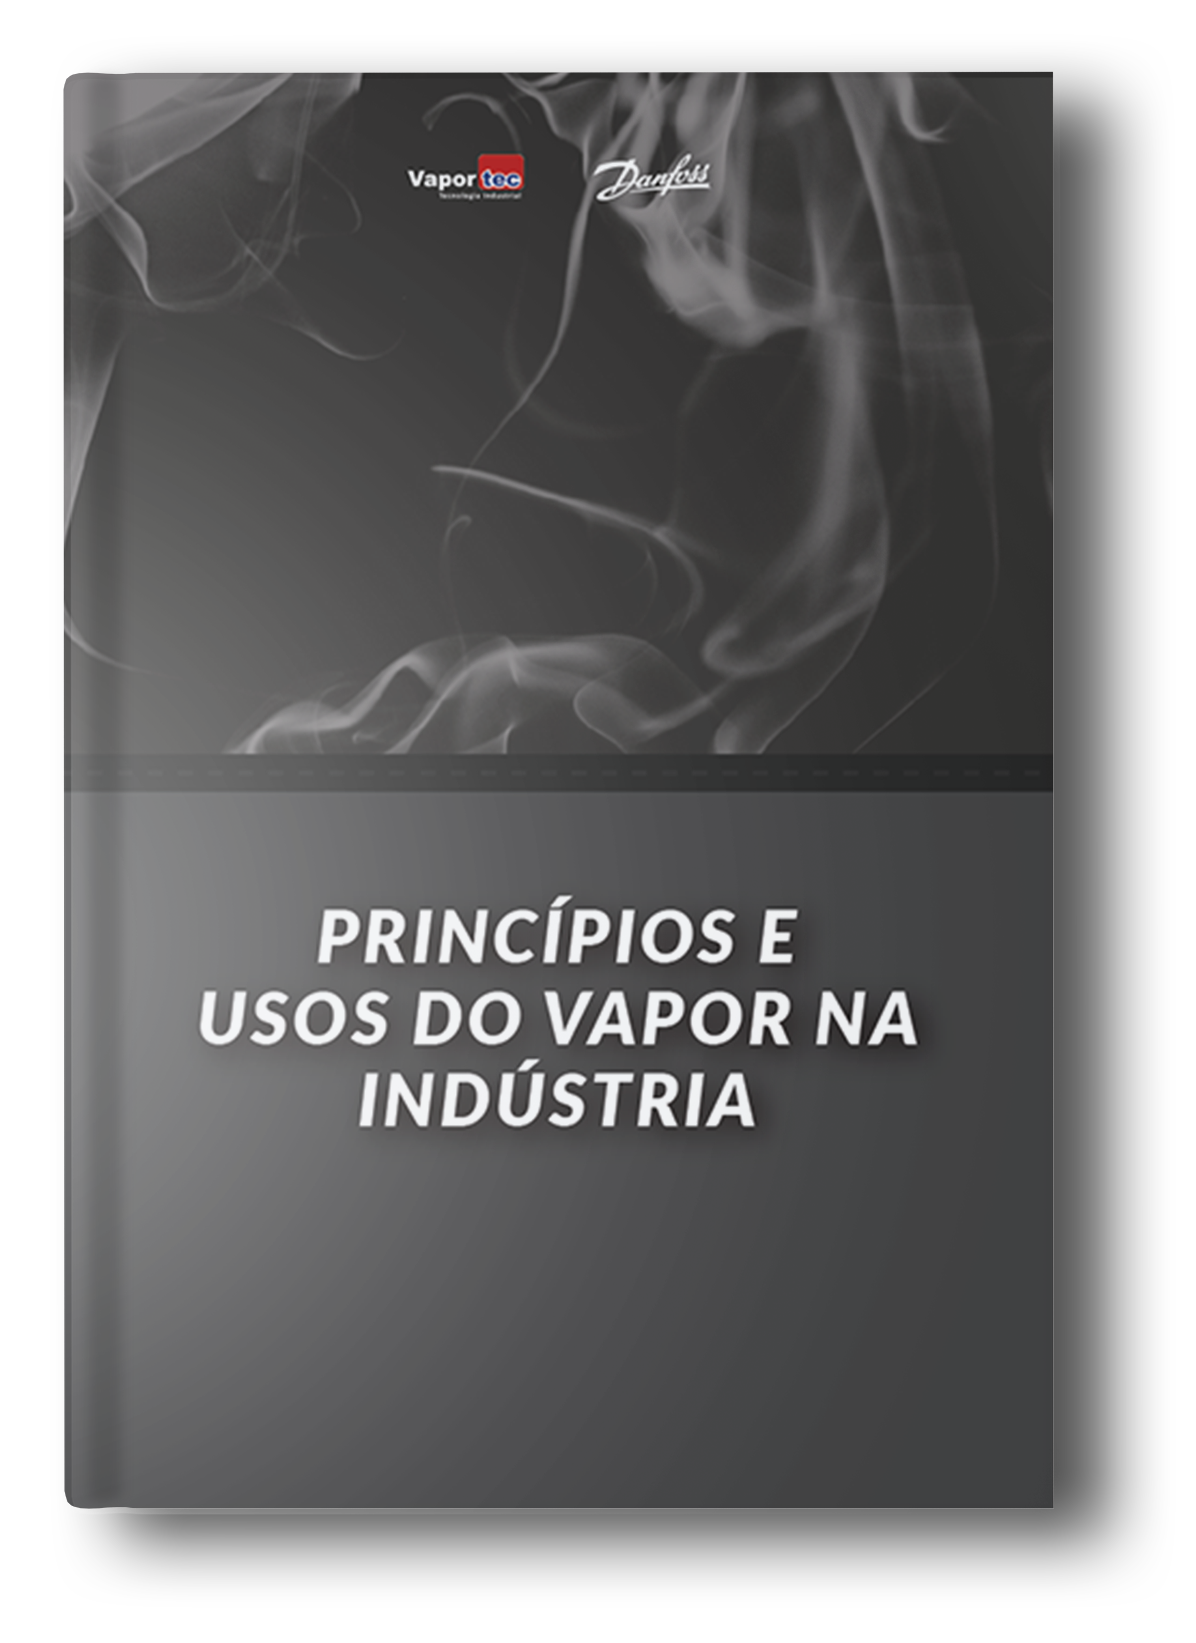 Princípios e usos do vapor na indústria